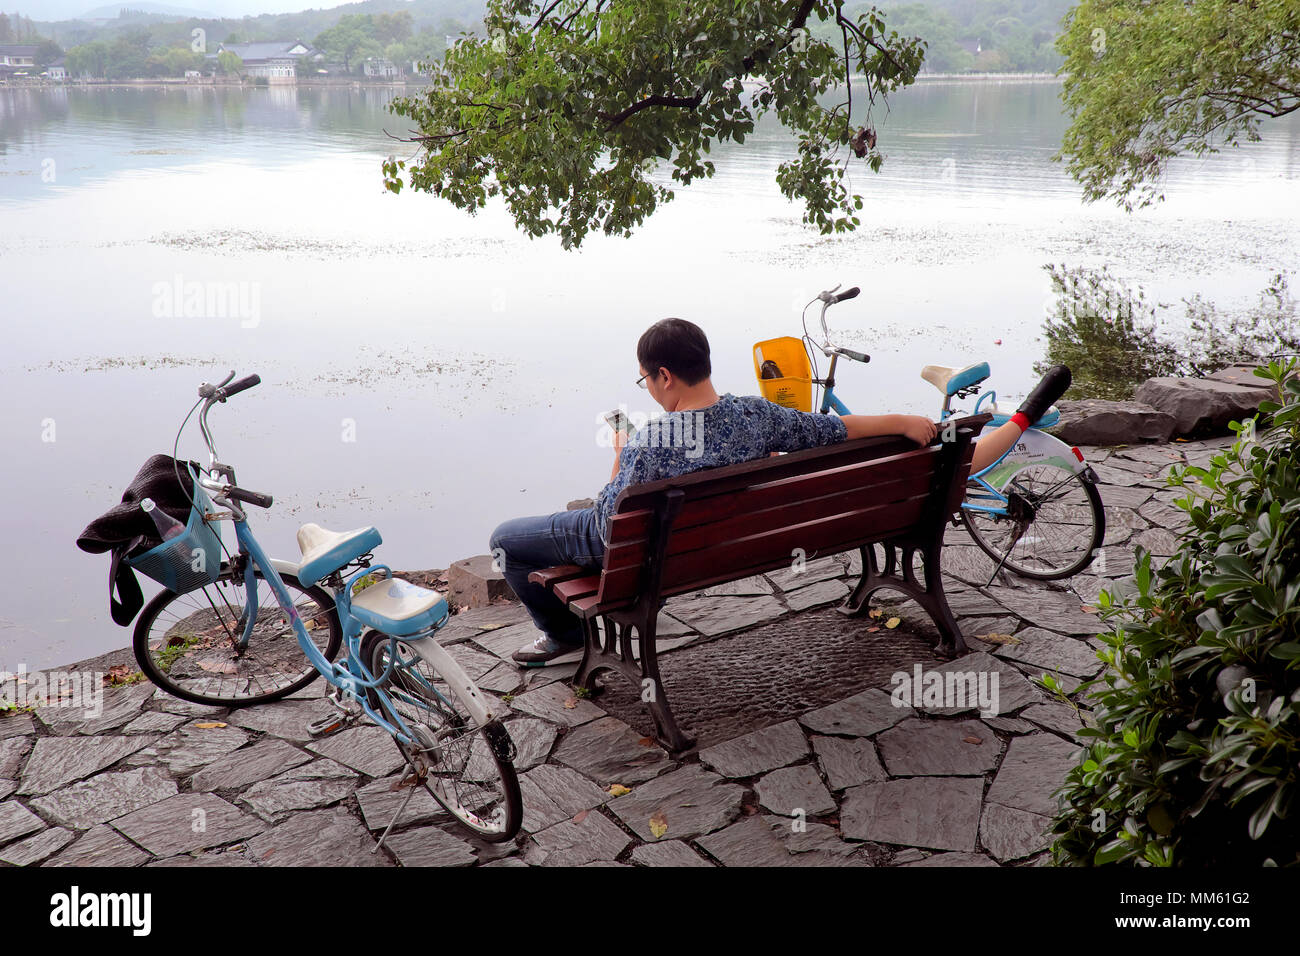 Man Surfen / sein Handy prüfen, während seine Freundin nimmt eine Power Nap, West Lake, Hangzhou, Provinz Zhejiang, China Stockfoto